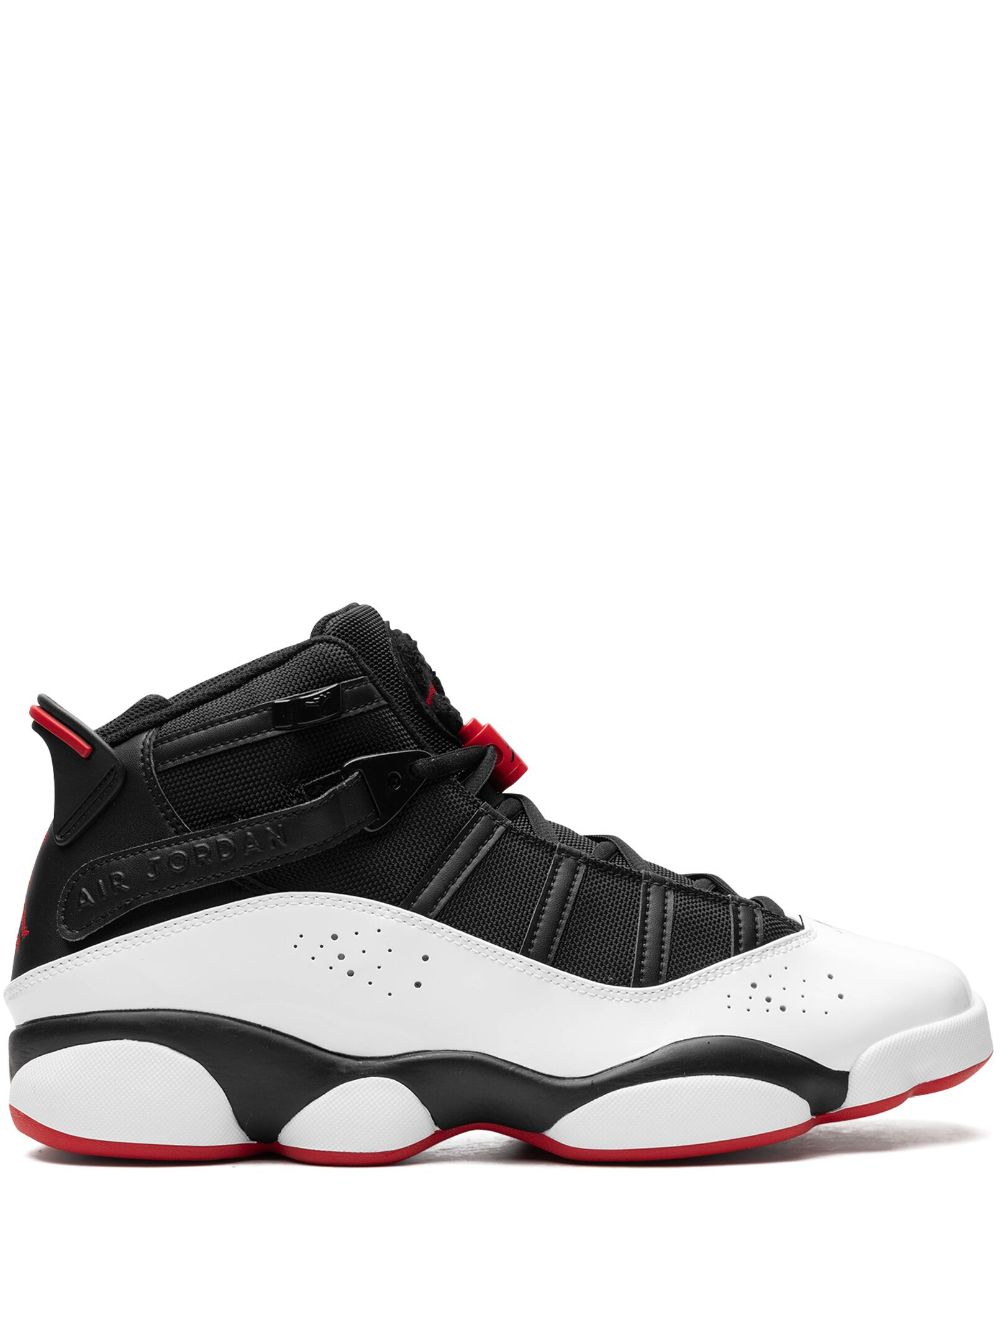 Image 1 of Jordan 6 Rings "Wht/Blk/Red" sneakers